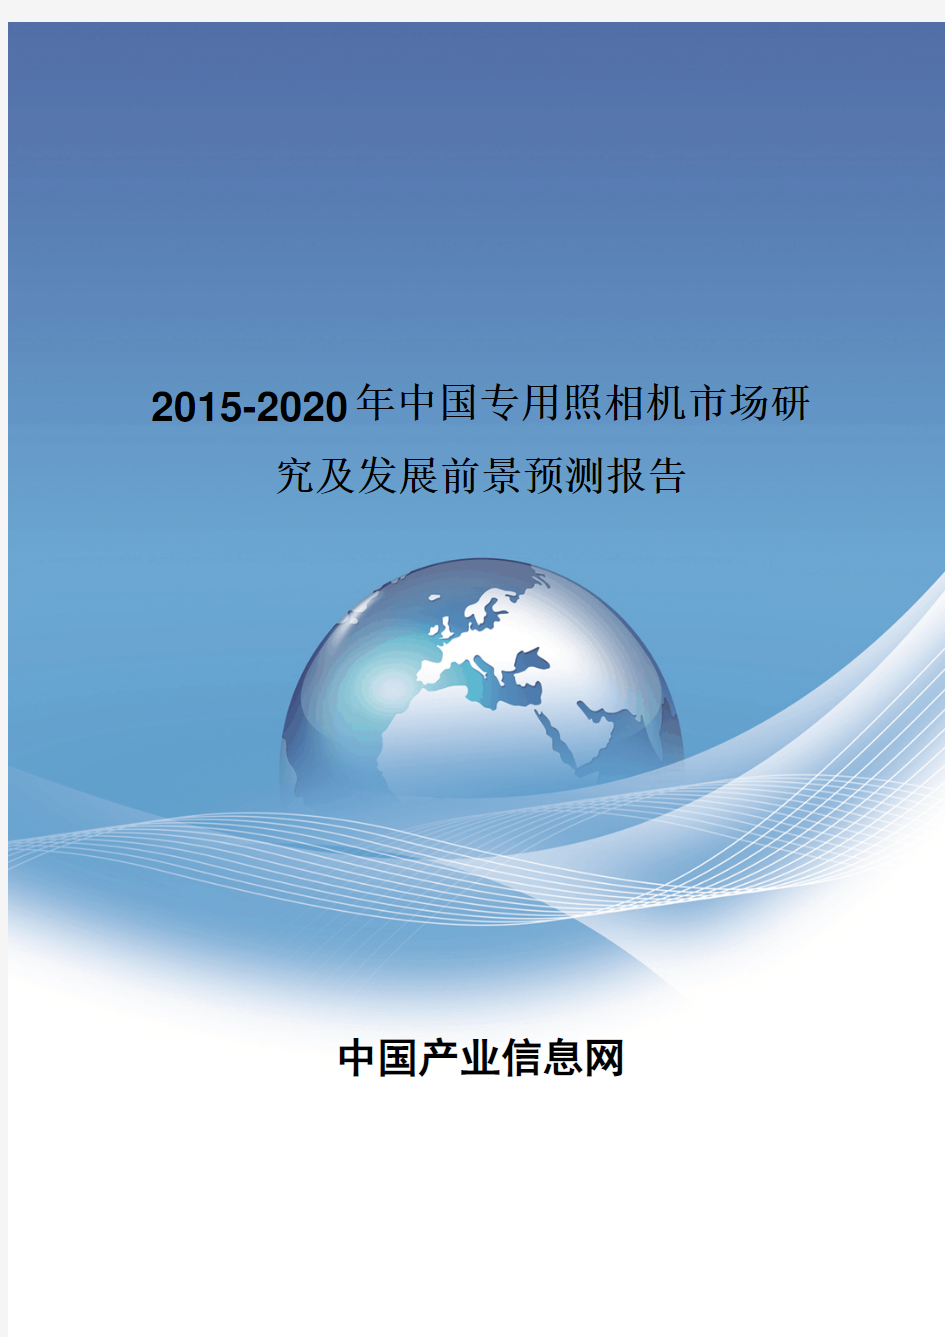 2015-2020年中国专用照相机市场研究报告